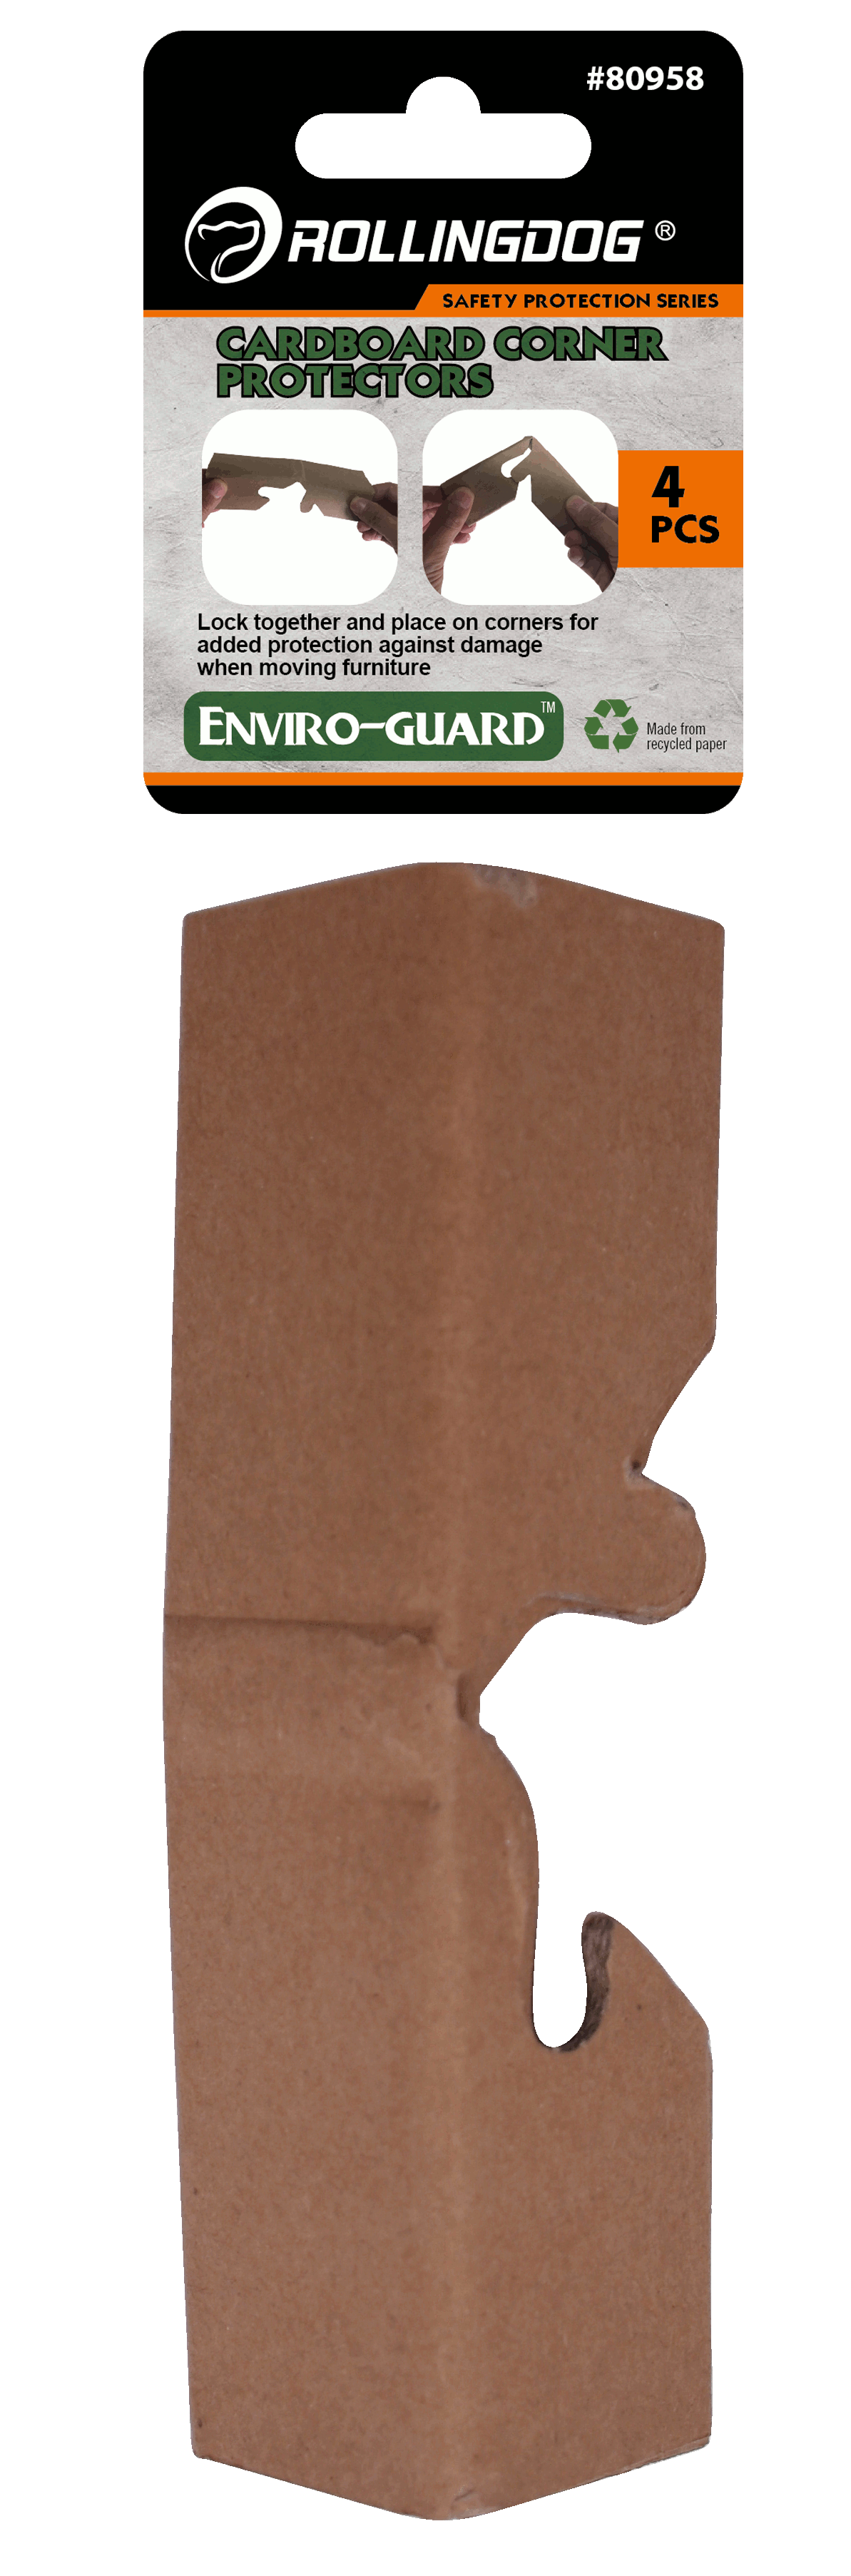 ENVIRO-GUARDTM Cardboard Corner Protectors (4PCS)                                                                                                                                                       